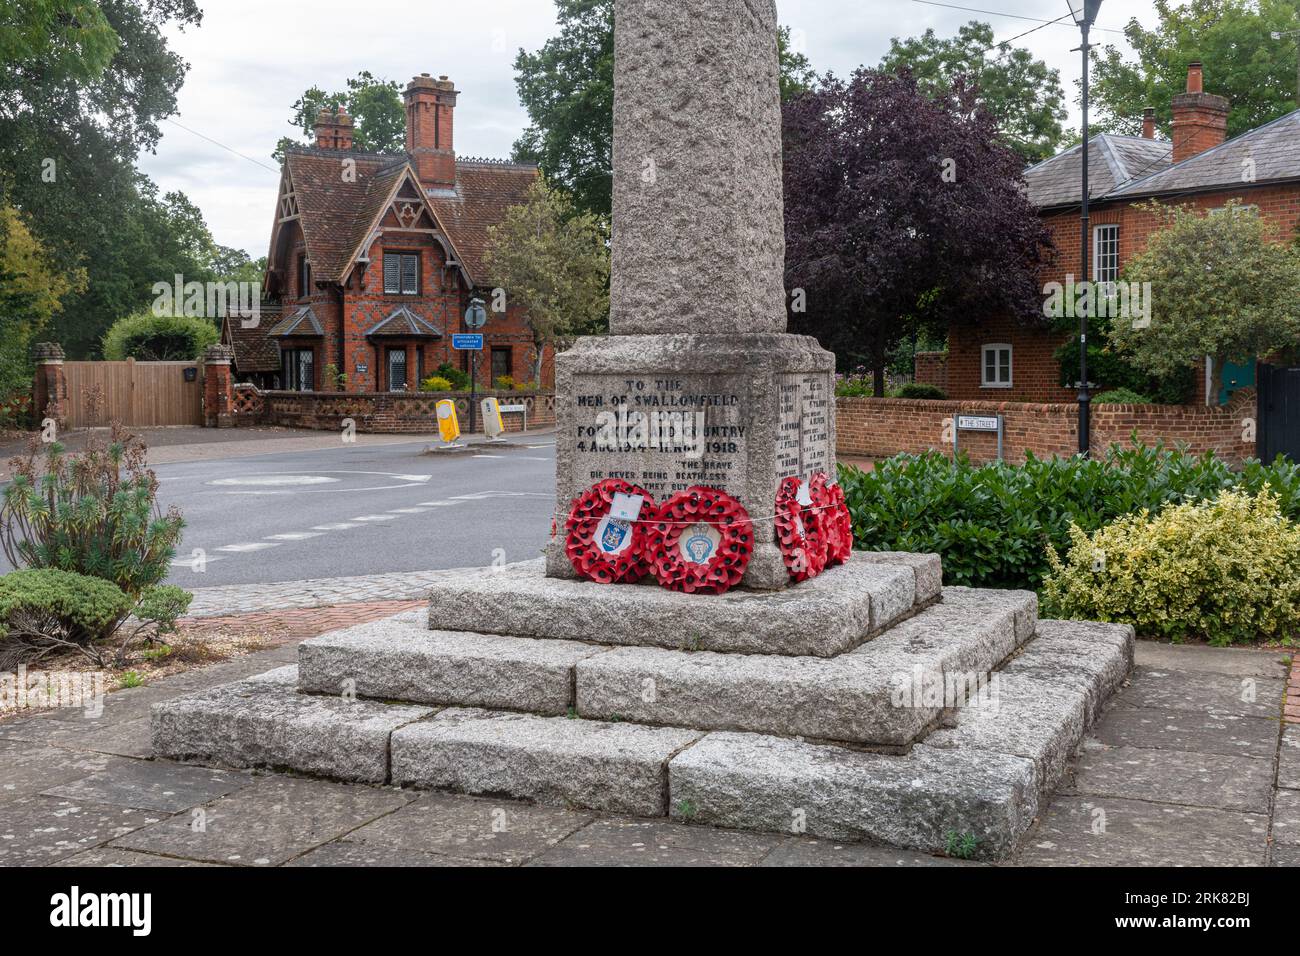 Le Mémorial de guerre dans le centre du village de Swallowfield, Berkshire, Angleterre, Royaume-Uni Banque D'Images